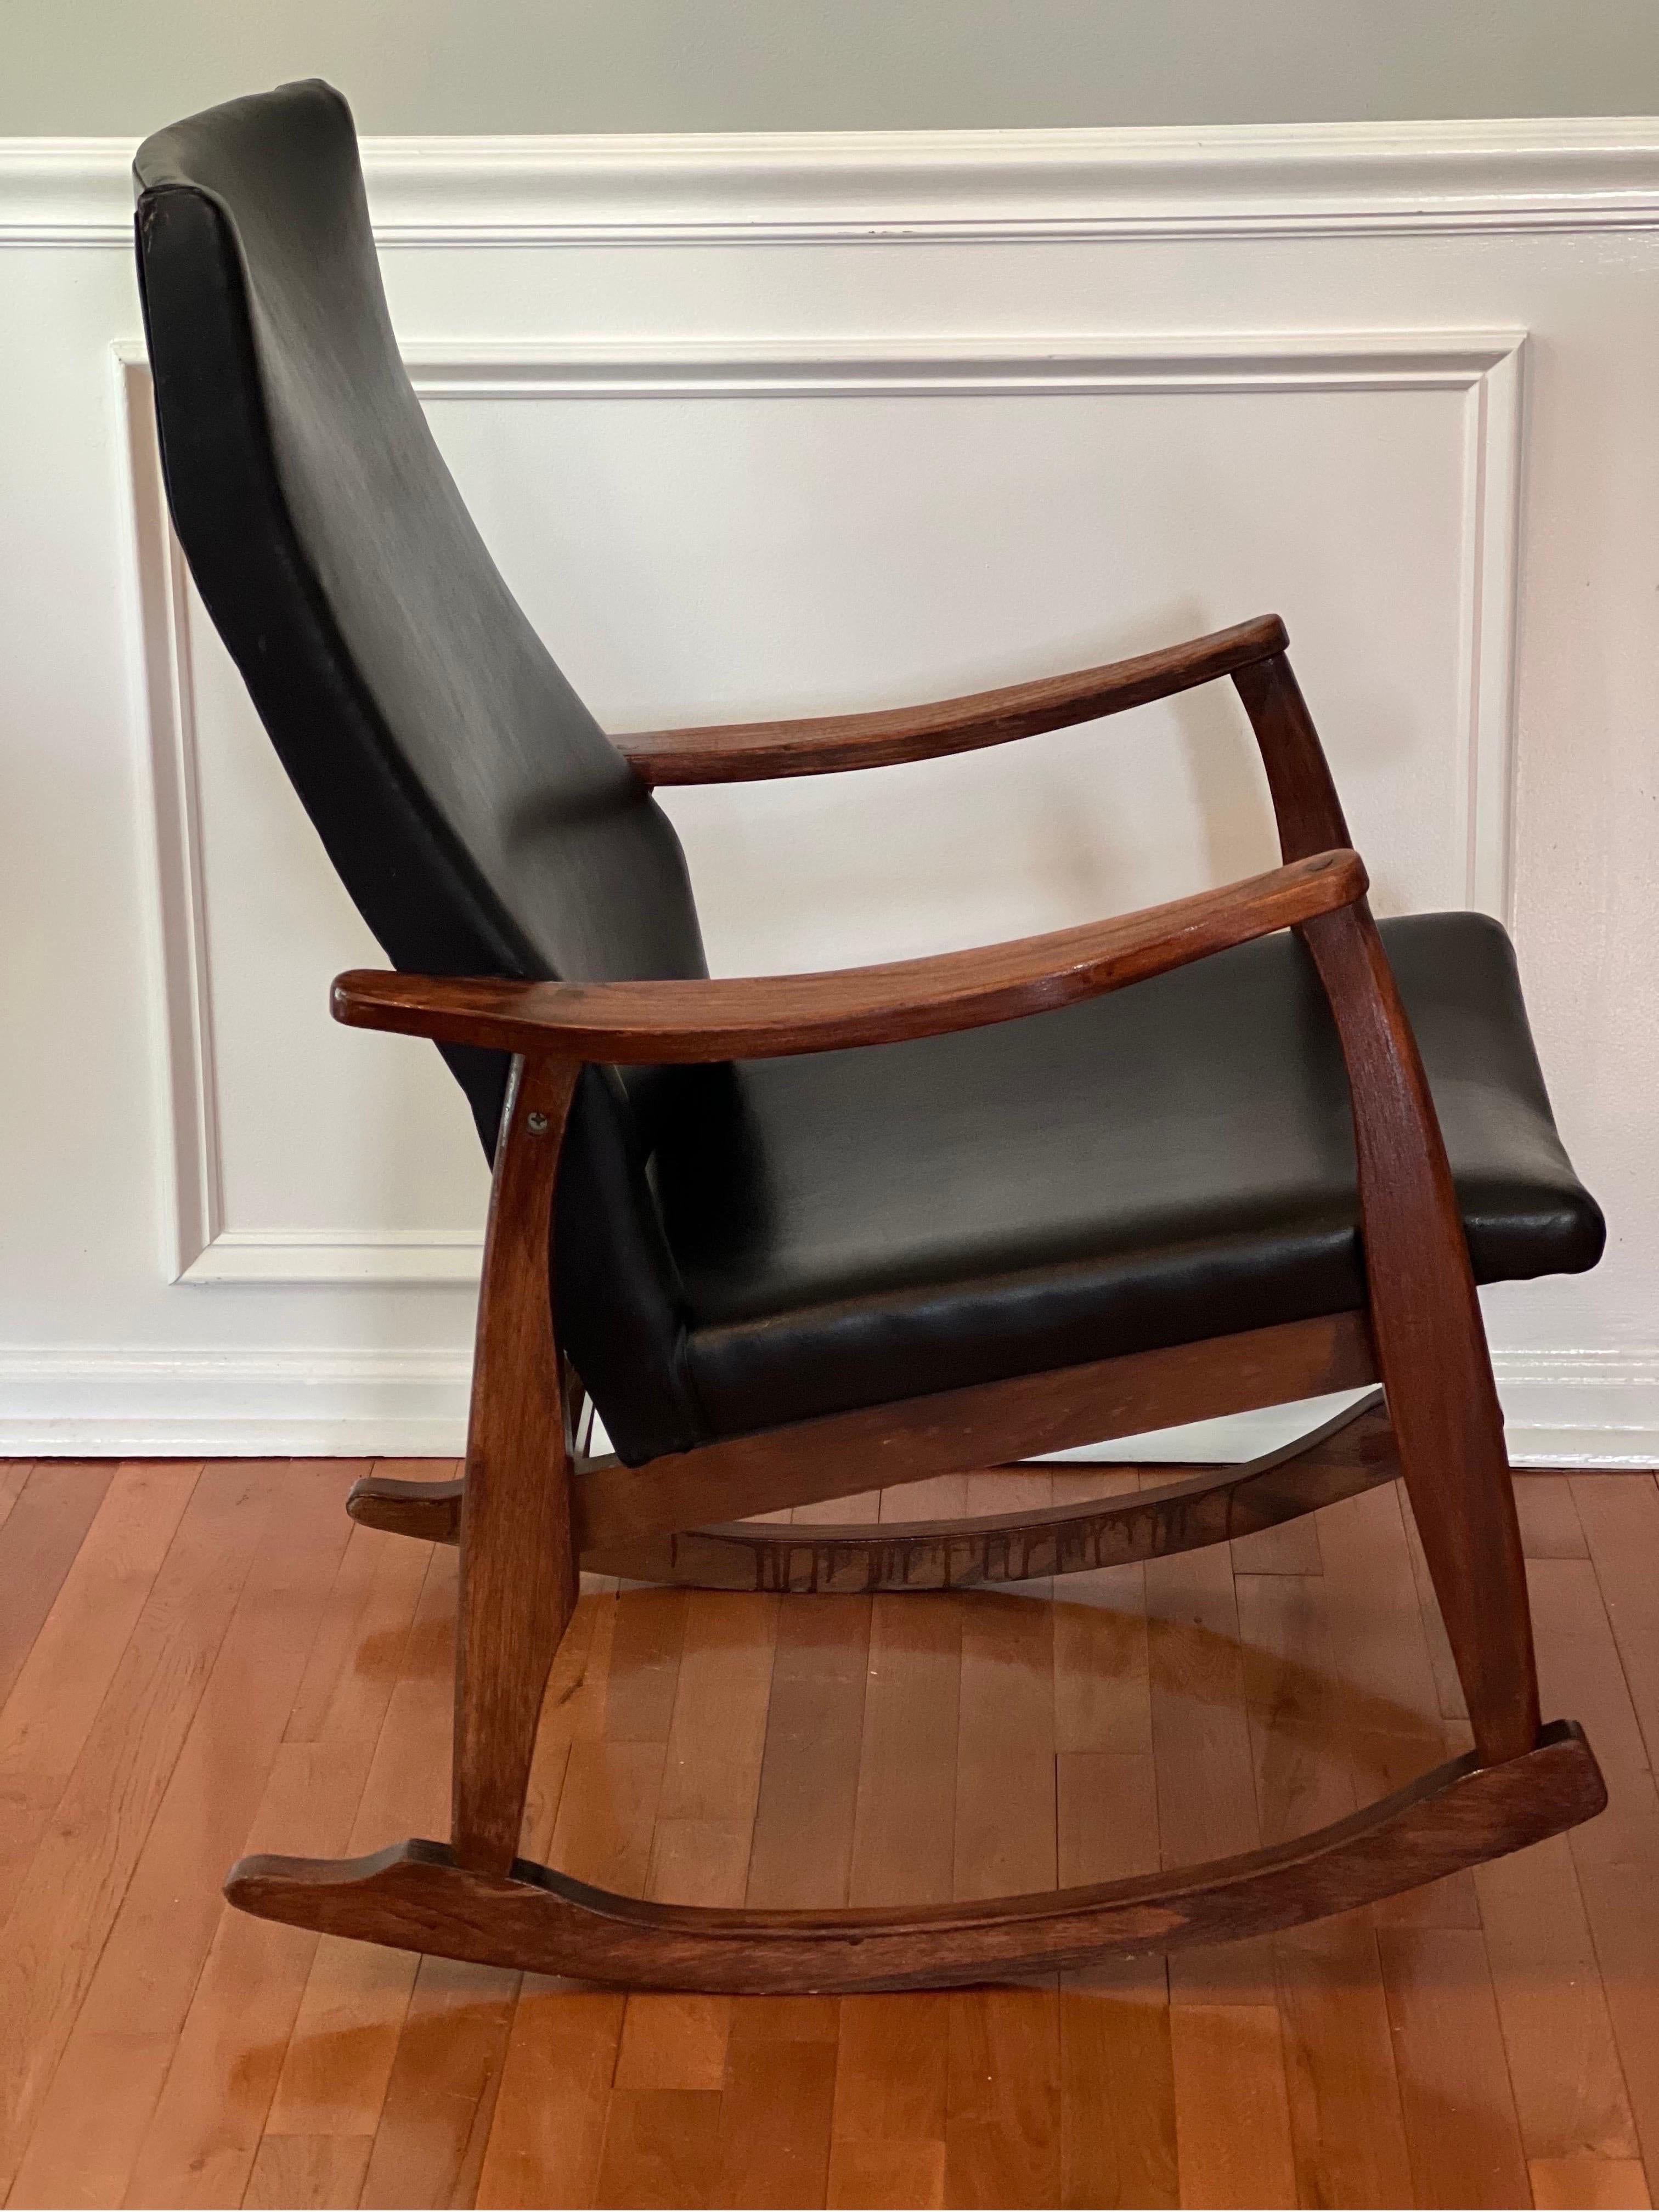 Elegant fauteuil à bascule vintage du milieu du siècle dans le style de Milo Baughman. Ce confortable fauteuil à bascule est doté d'un cadre robuste en bois massif et d'un rembourrage en Naugahyde noir en très bon état. Une belle pièce.